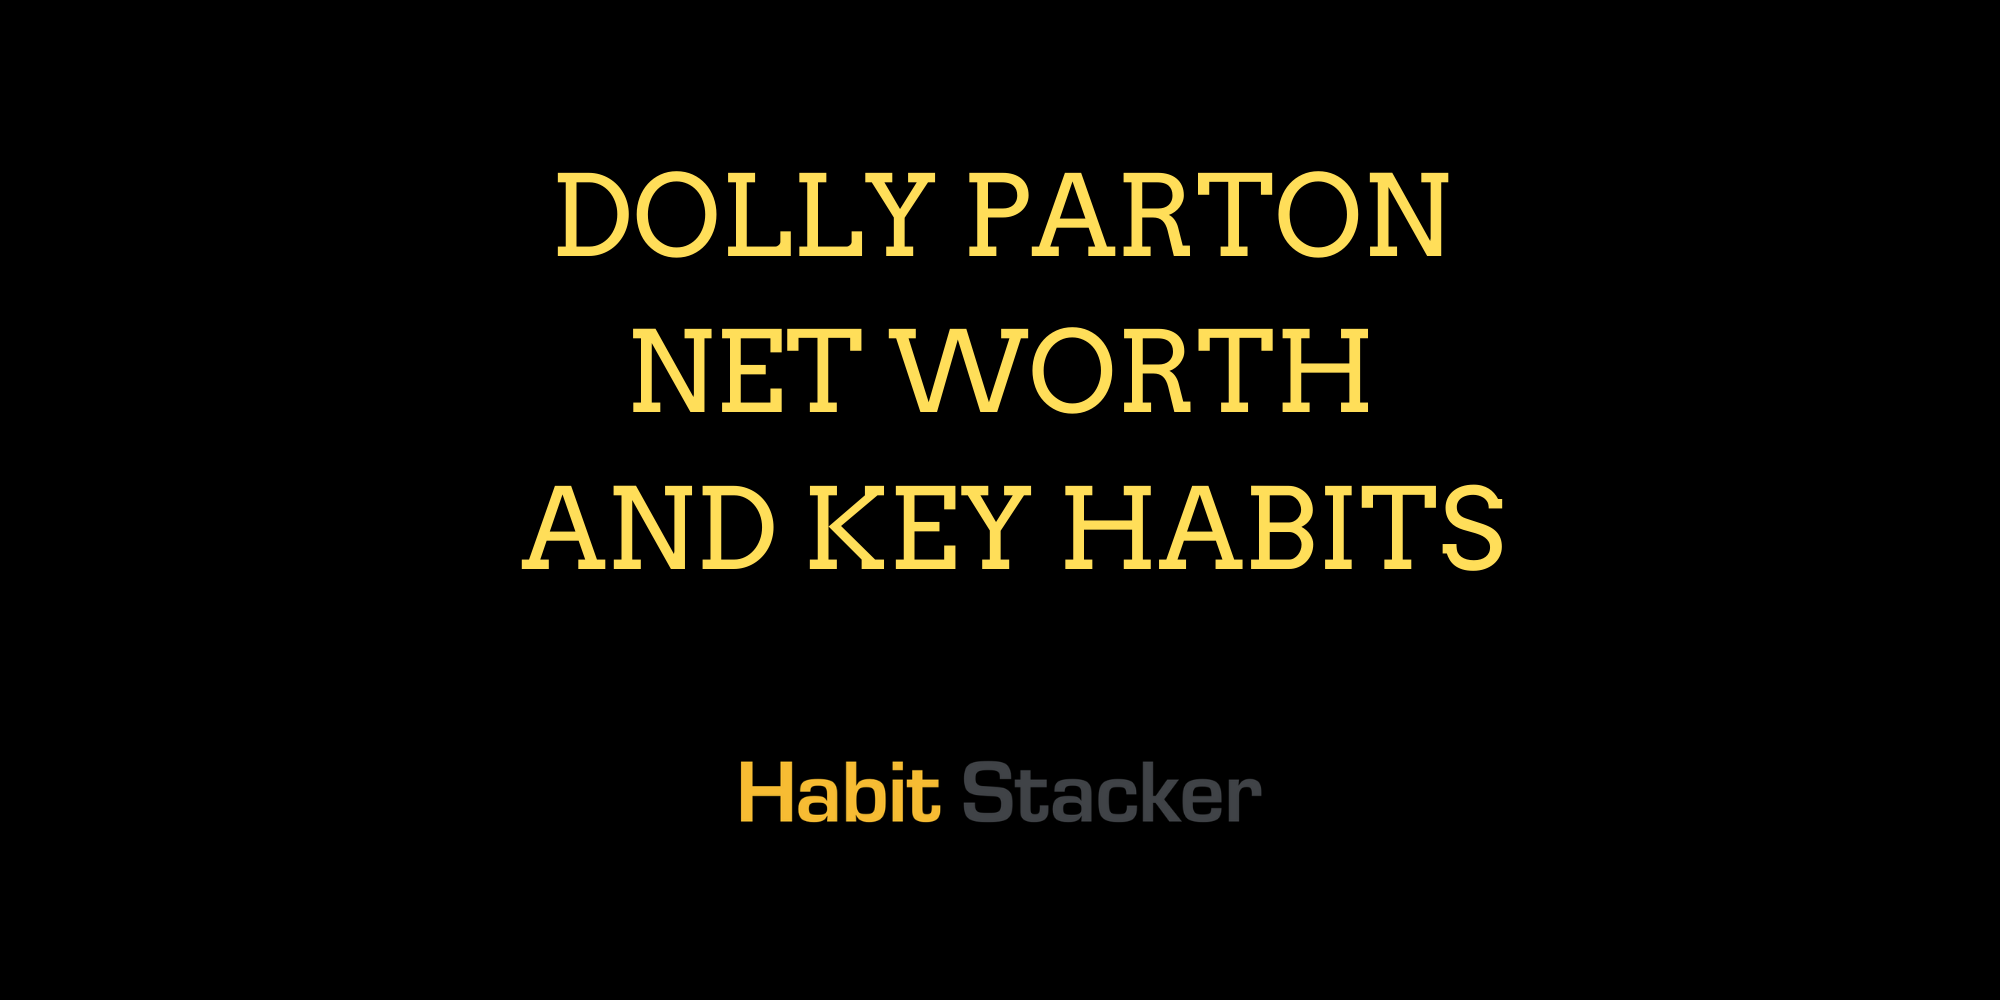 Dolly Parton Net Worth and Key Habits